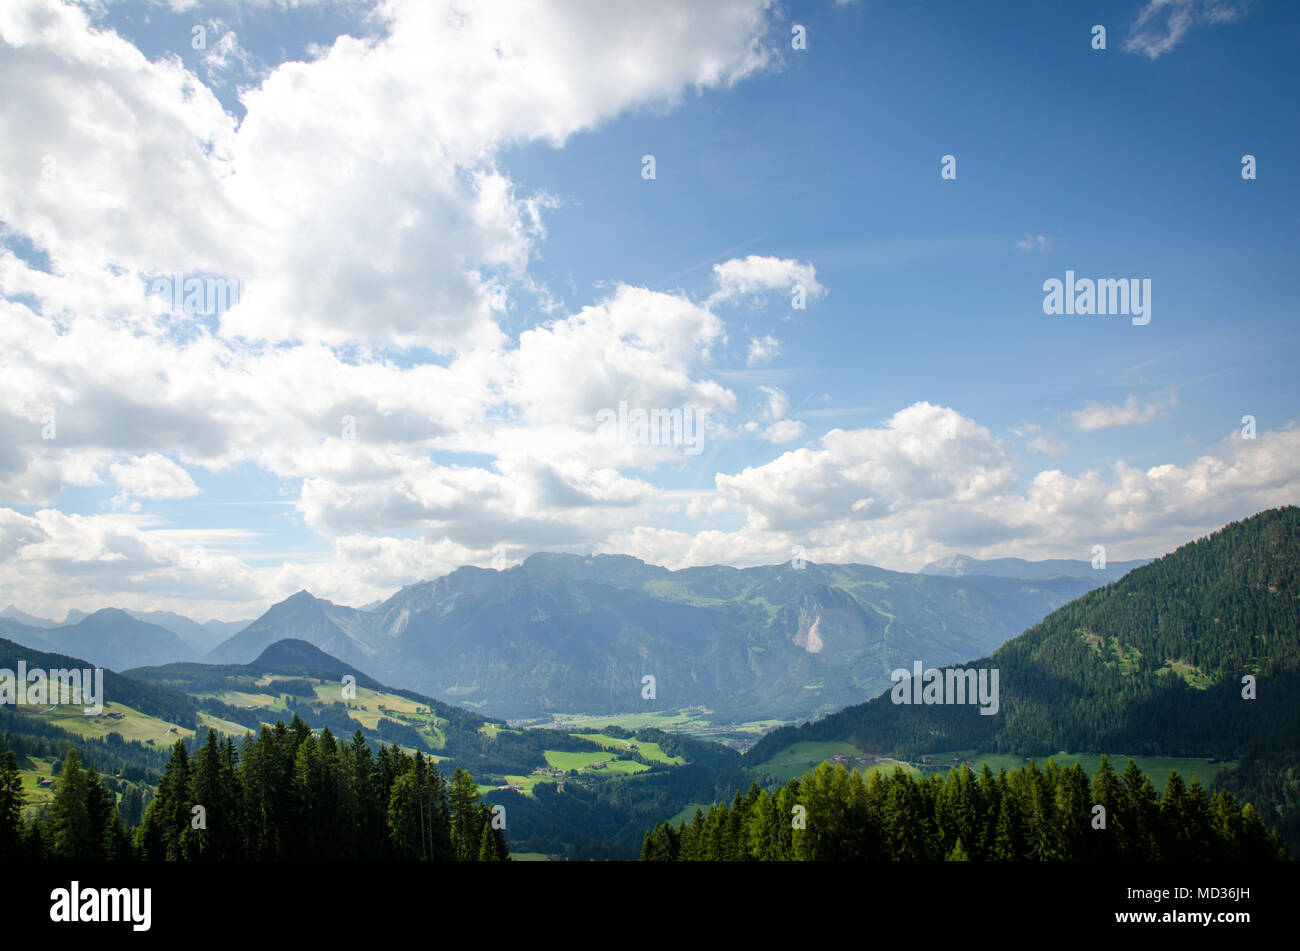 Hiking in Austria, mountain view Stock Photo